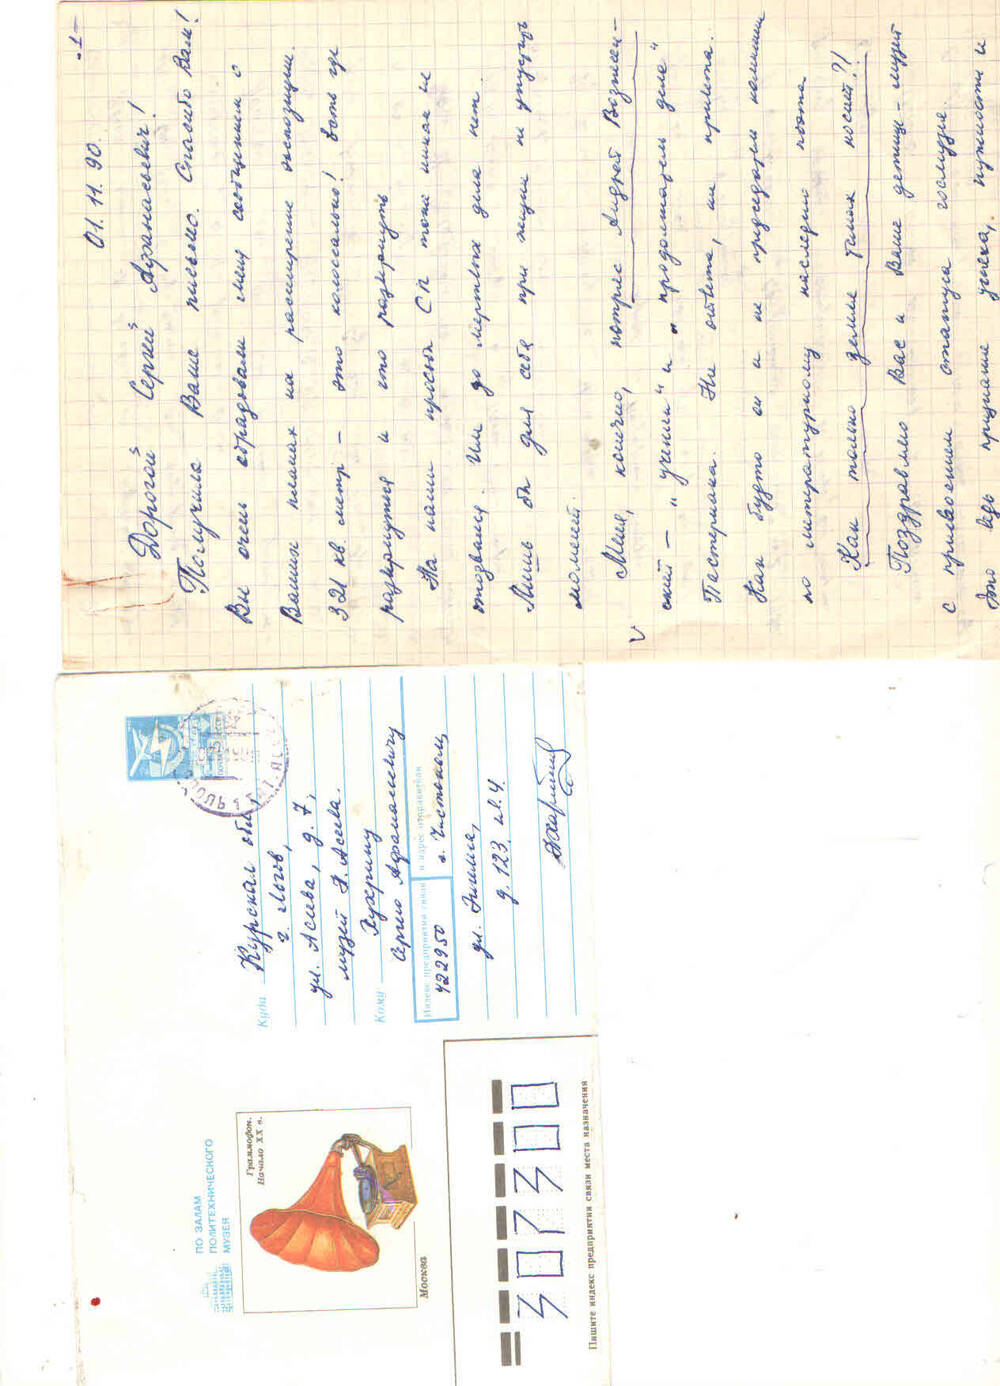 Письмо
Н. Харитоновой к С.А. Хухрину от 1.11.90г.   чернила фиолетовые, текст рукописный. Н. Харитонова пишет о А. Вознесенском. Прилагается  конверт.